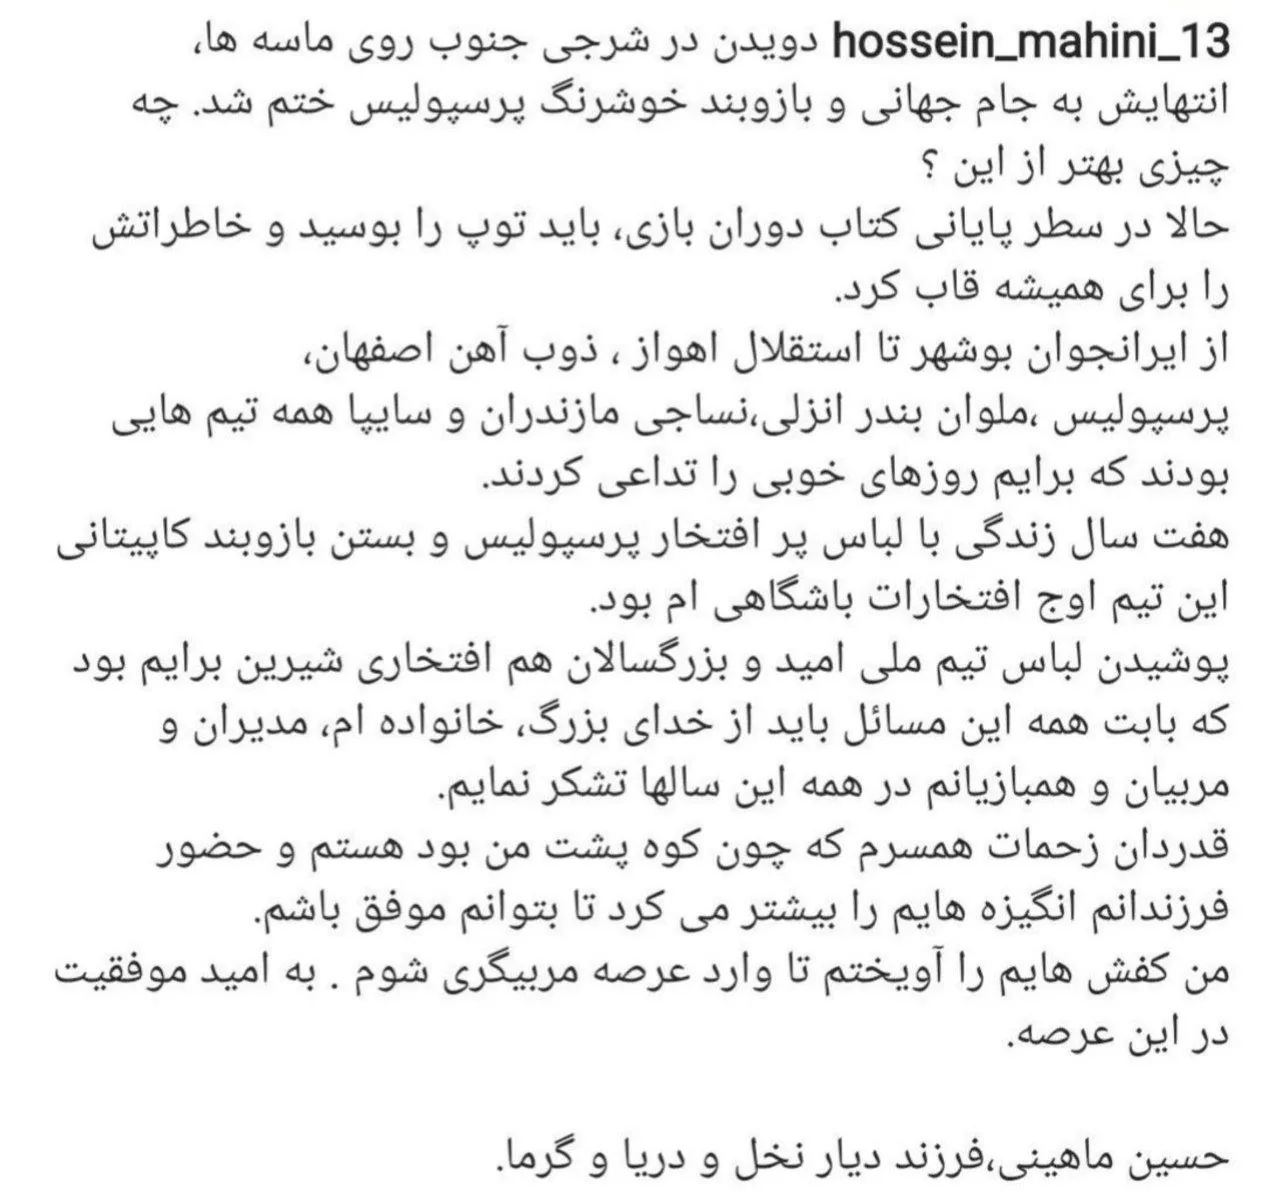 حسین ماهینی از دنیای فوتبال خداحافظی کرد + عکس